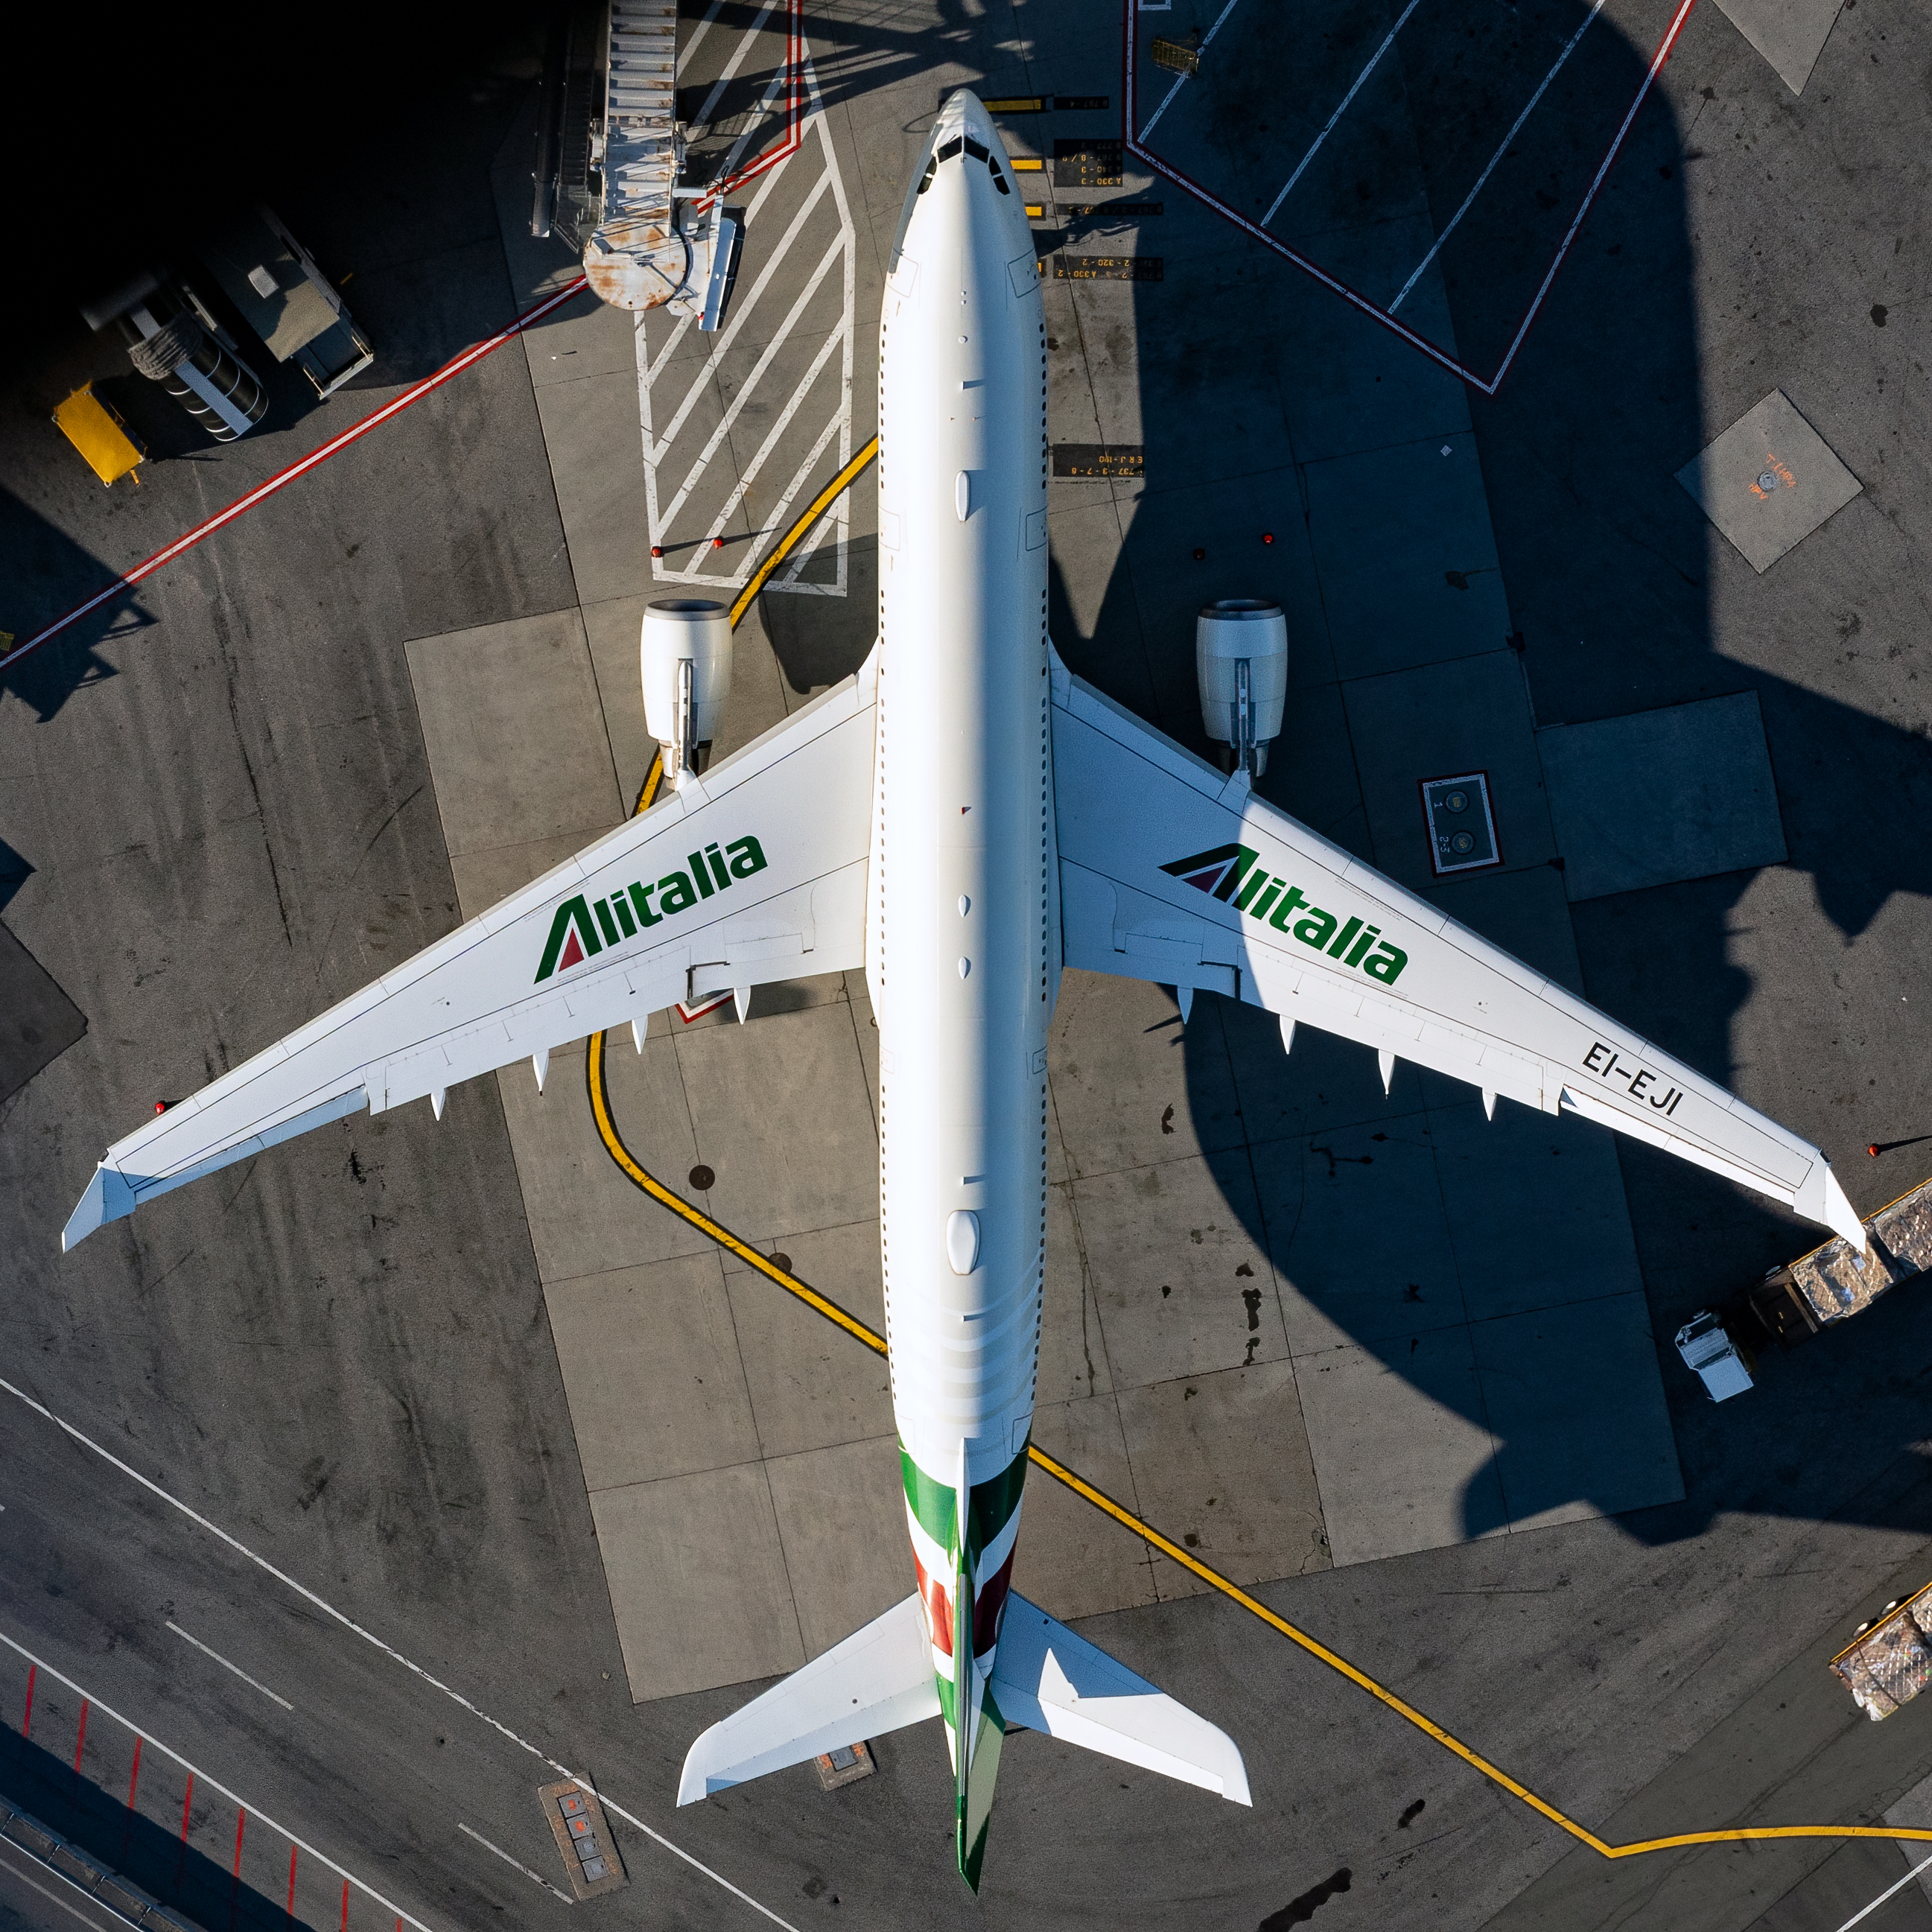 Copy-of-Alitalia-Airbus-A330-202-EI-EJI-2